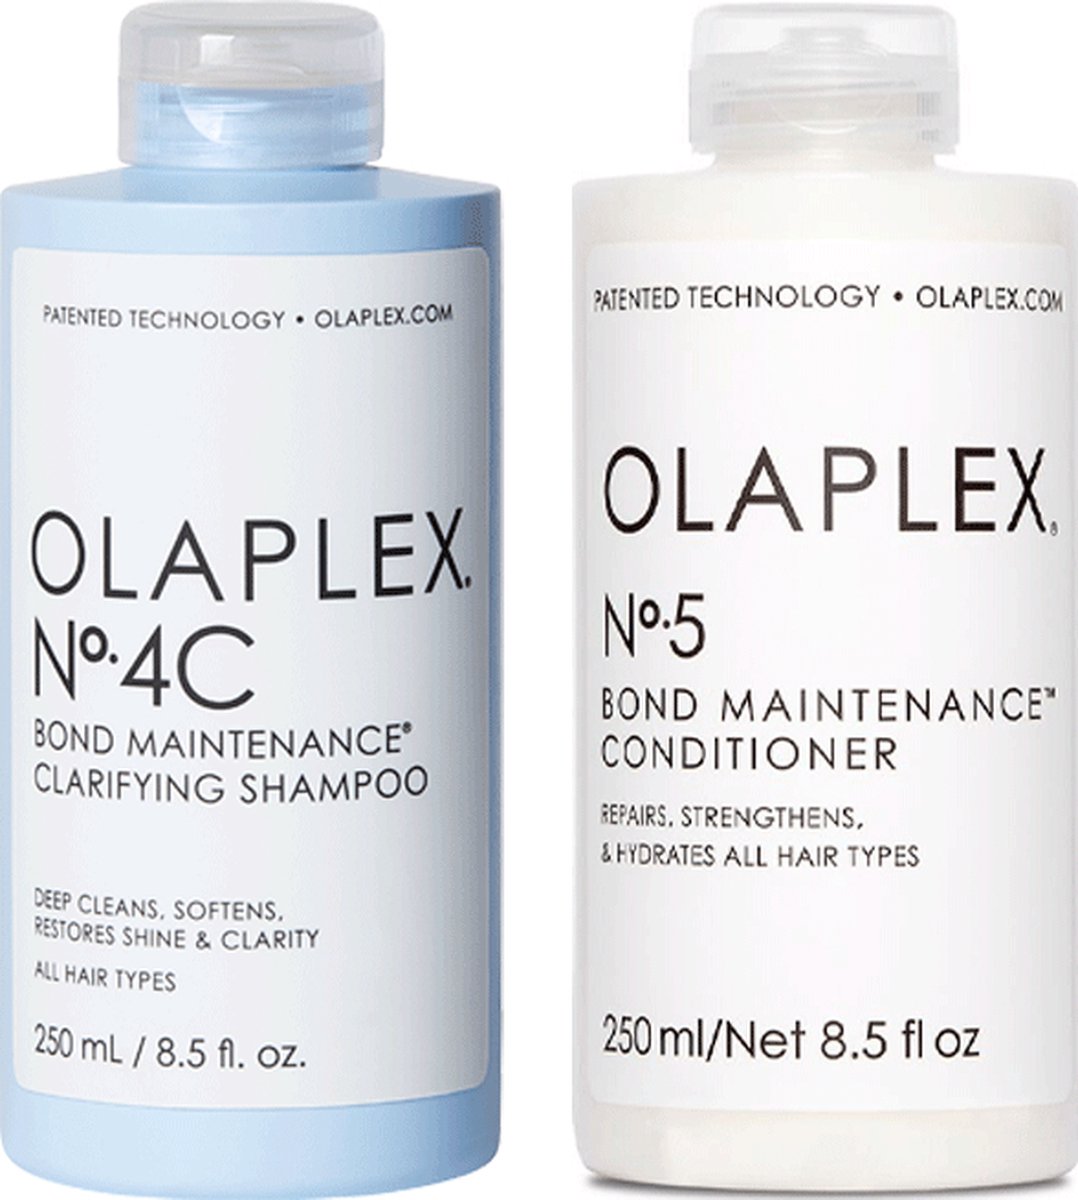 OLAPLEX pakket No.4C & No.5